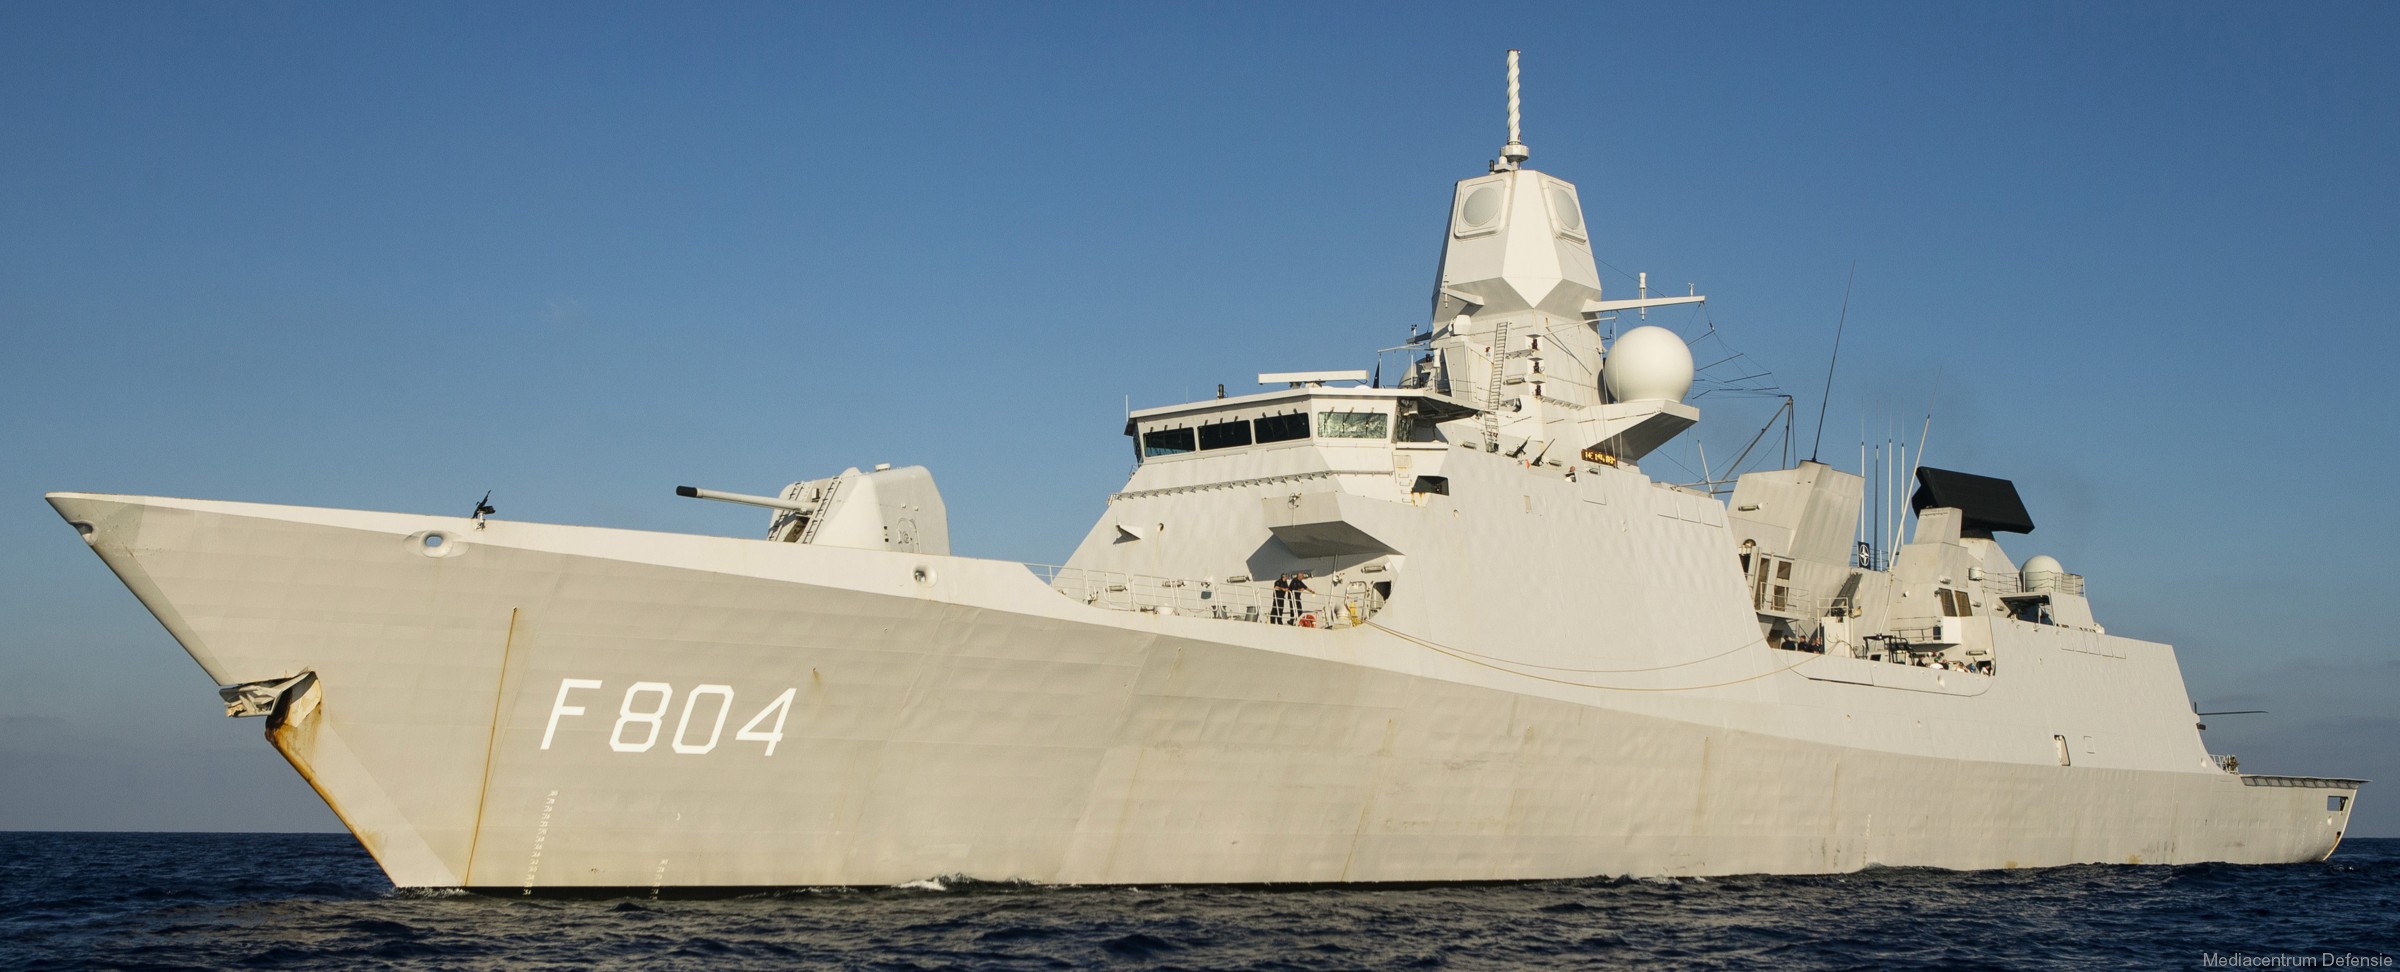 f-804 hnlms de ruyter guided missile frigate ffg lcf royal netherlands navy 04 koninklijke marine